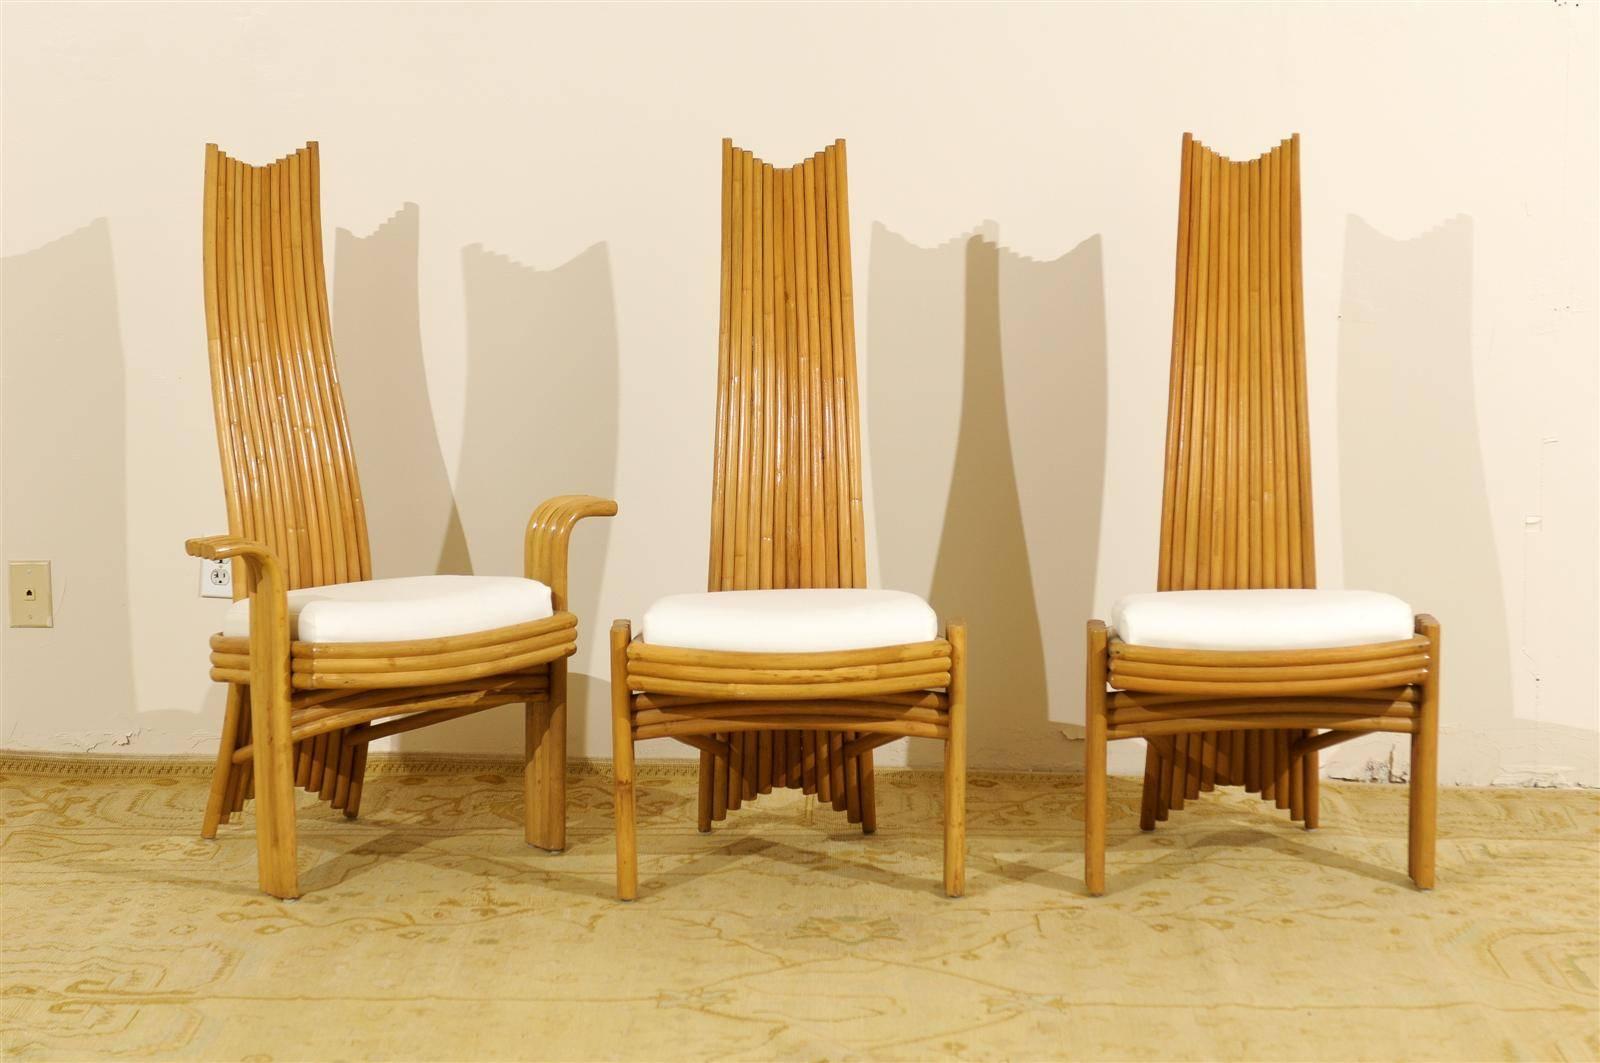 Un fabuleux ensemble de six chaises à manger en rotin à haut dossier. Une interprétation moderne du style Mackintosh classique. Extrêmement confortable et magnifiquement réalisé. Il y a deux chaises d'hôte et quatre chaises d'appoint. Bien que non